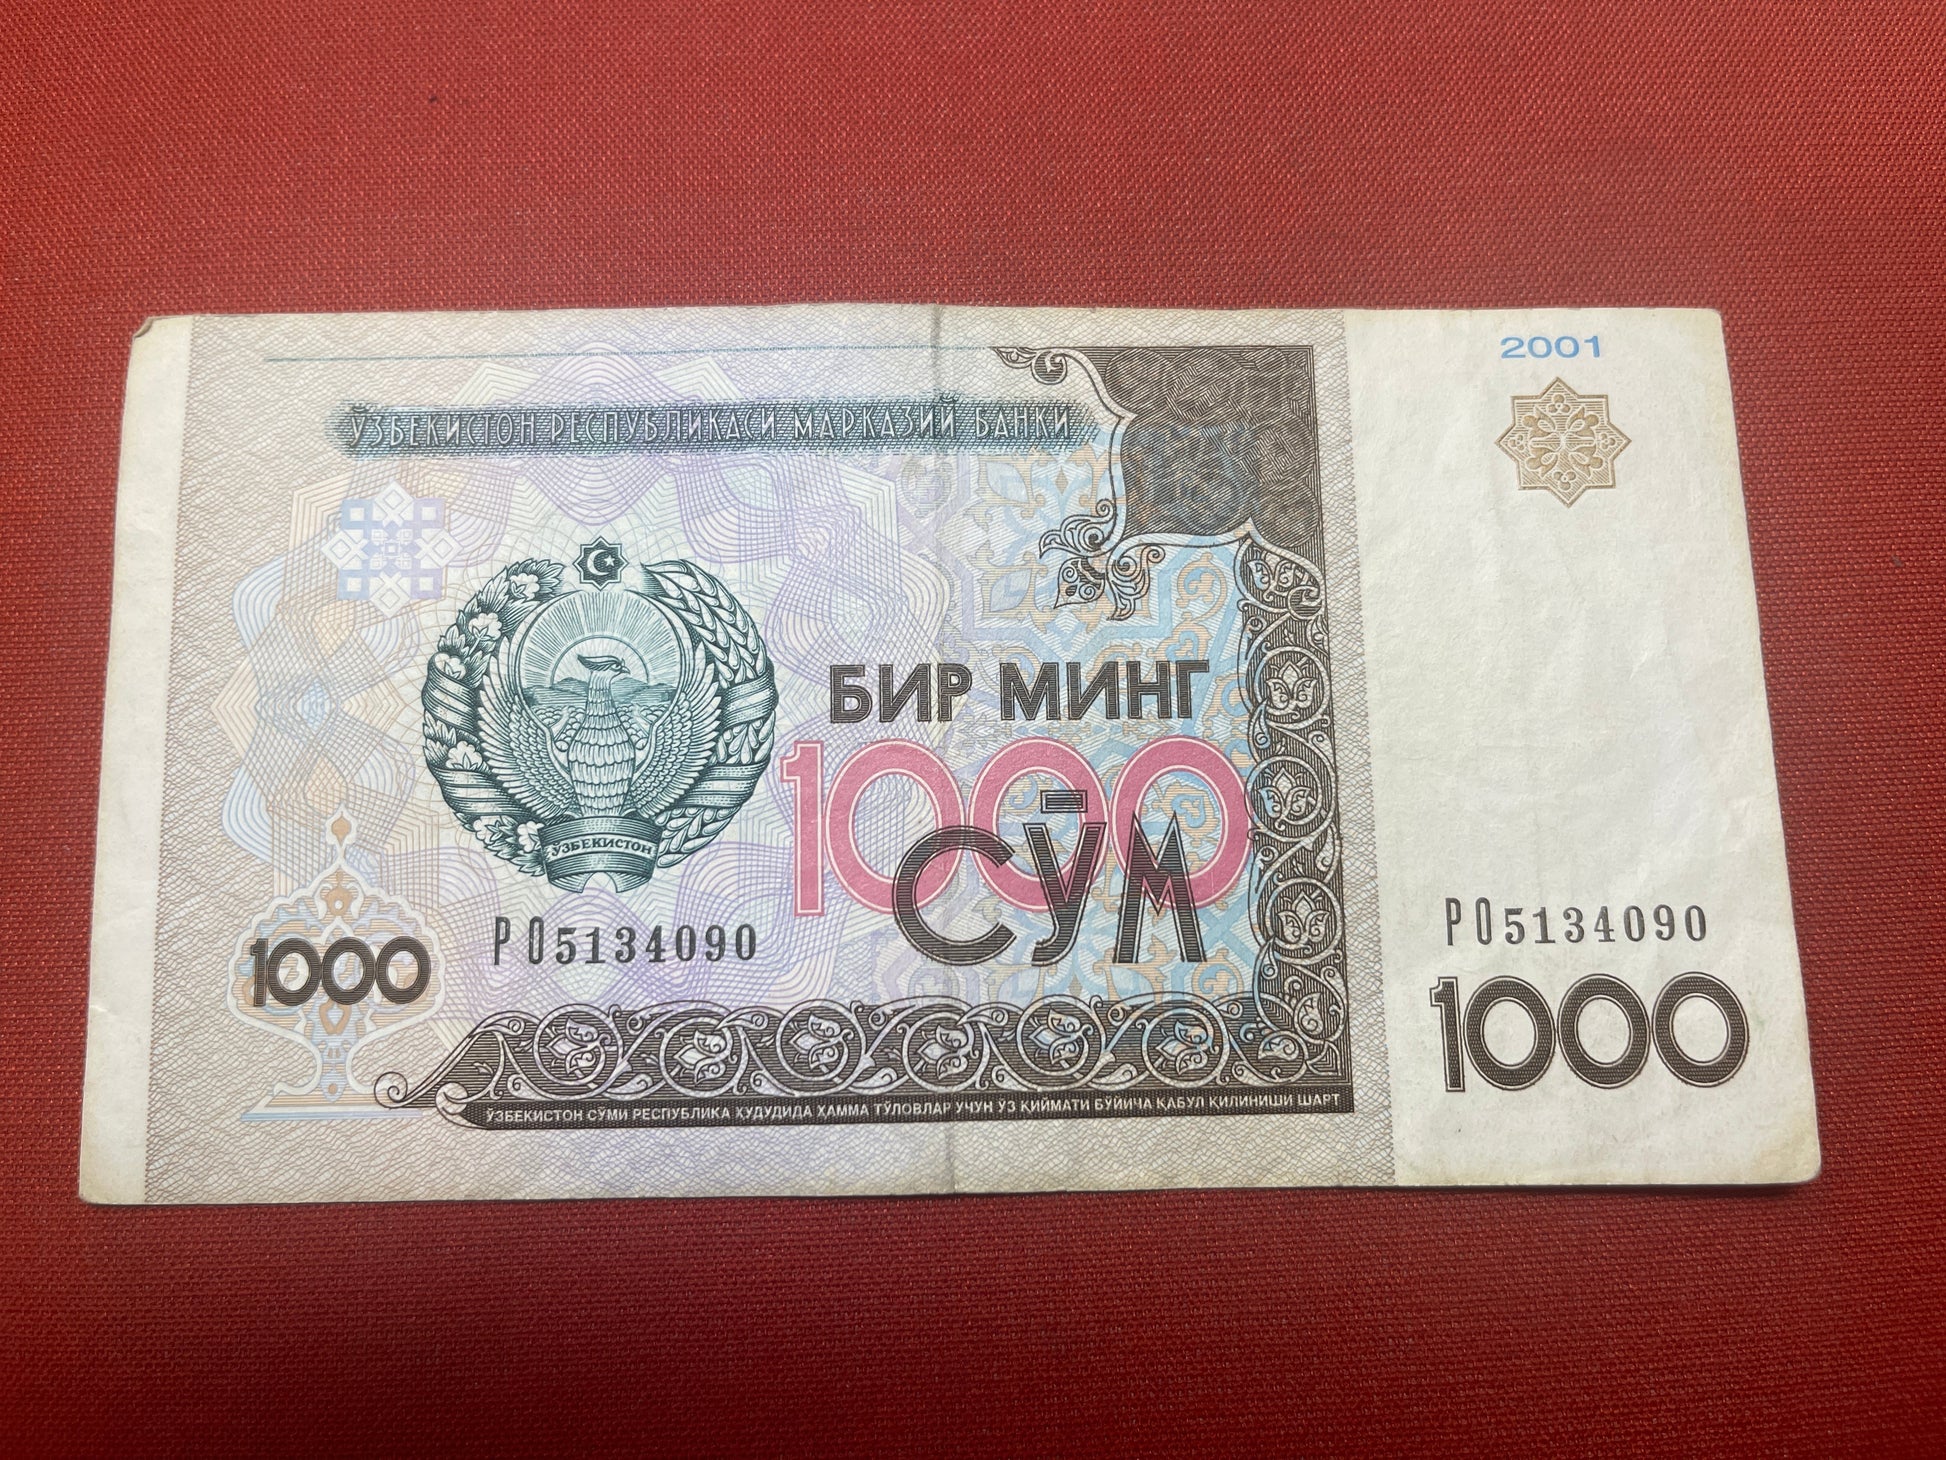  Central Bank of Uzbekistan 1000 So'm 6120192